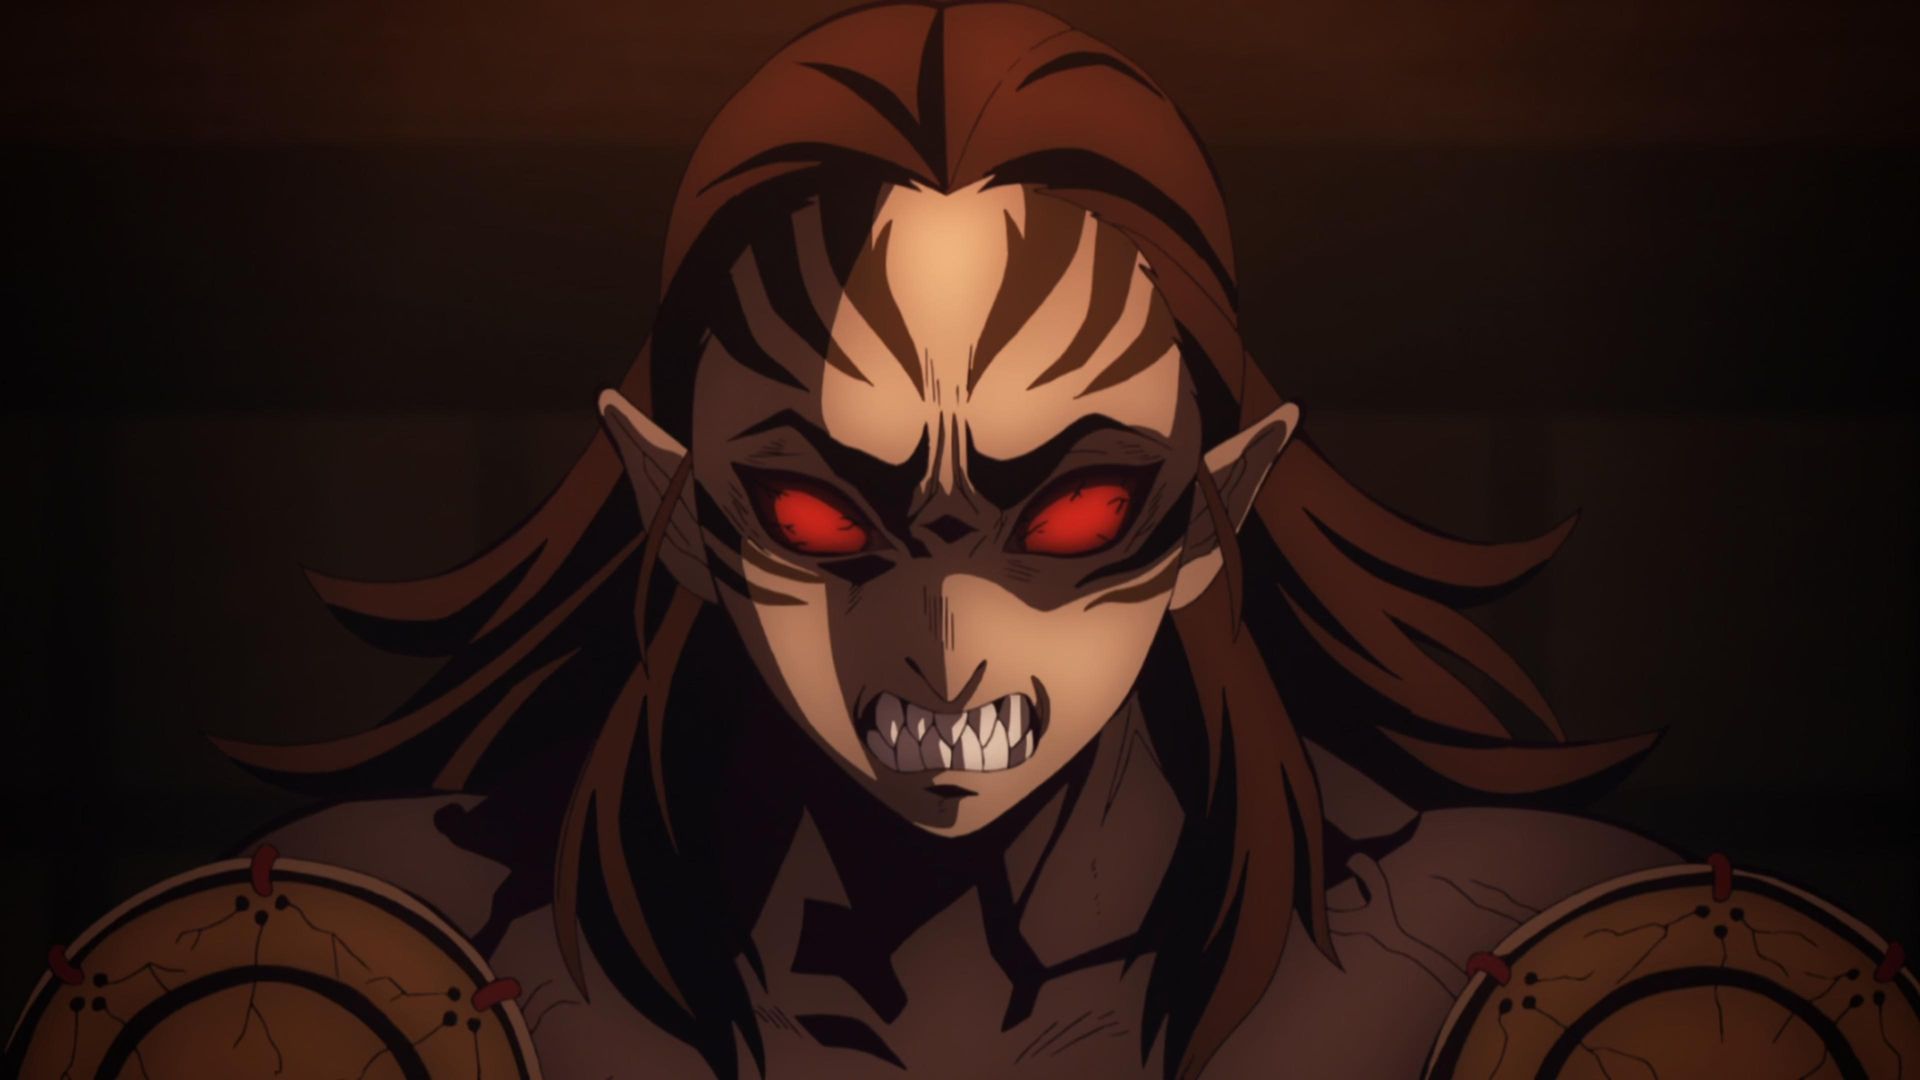 Demon Slayer: Kimetsu no Yaiba background